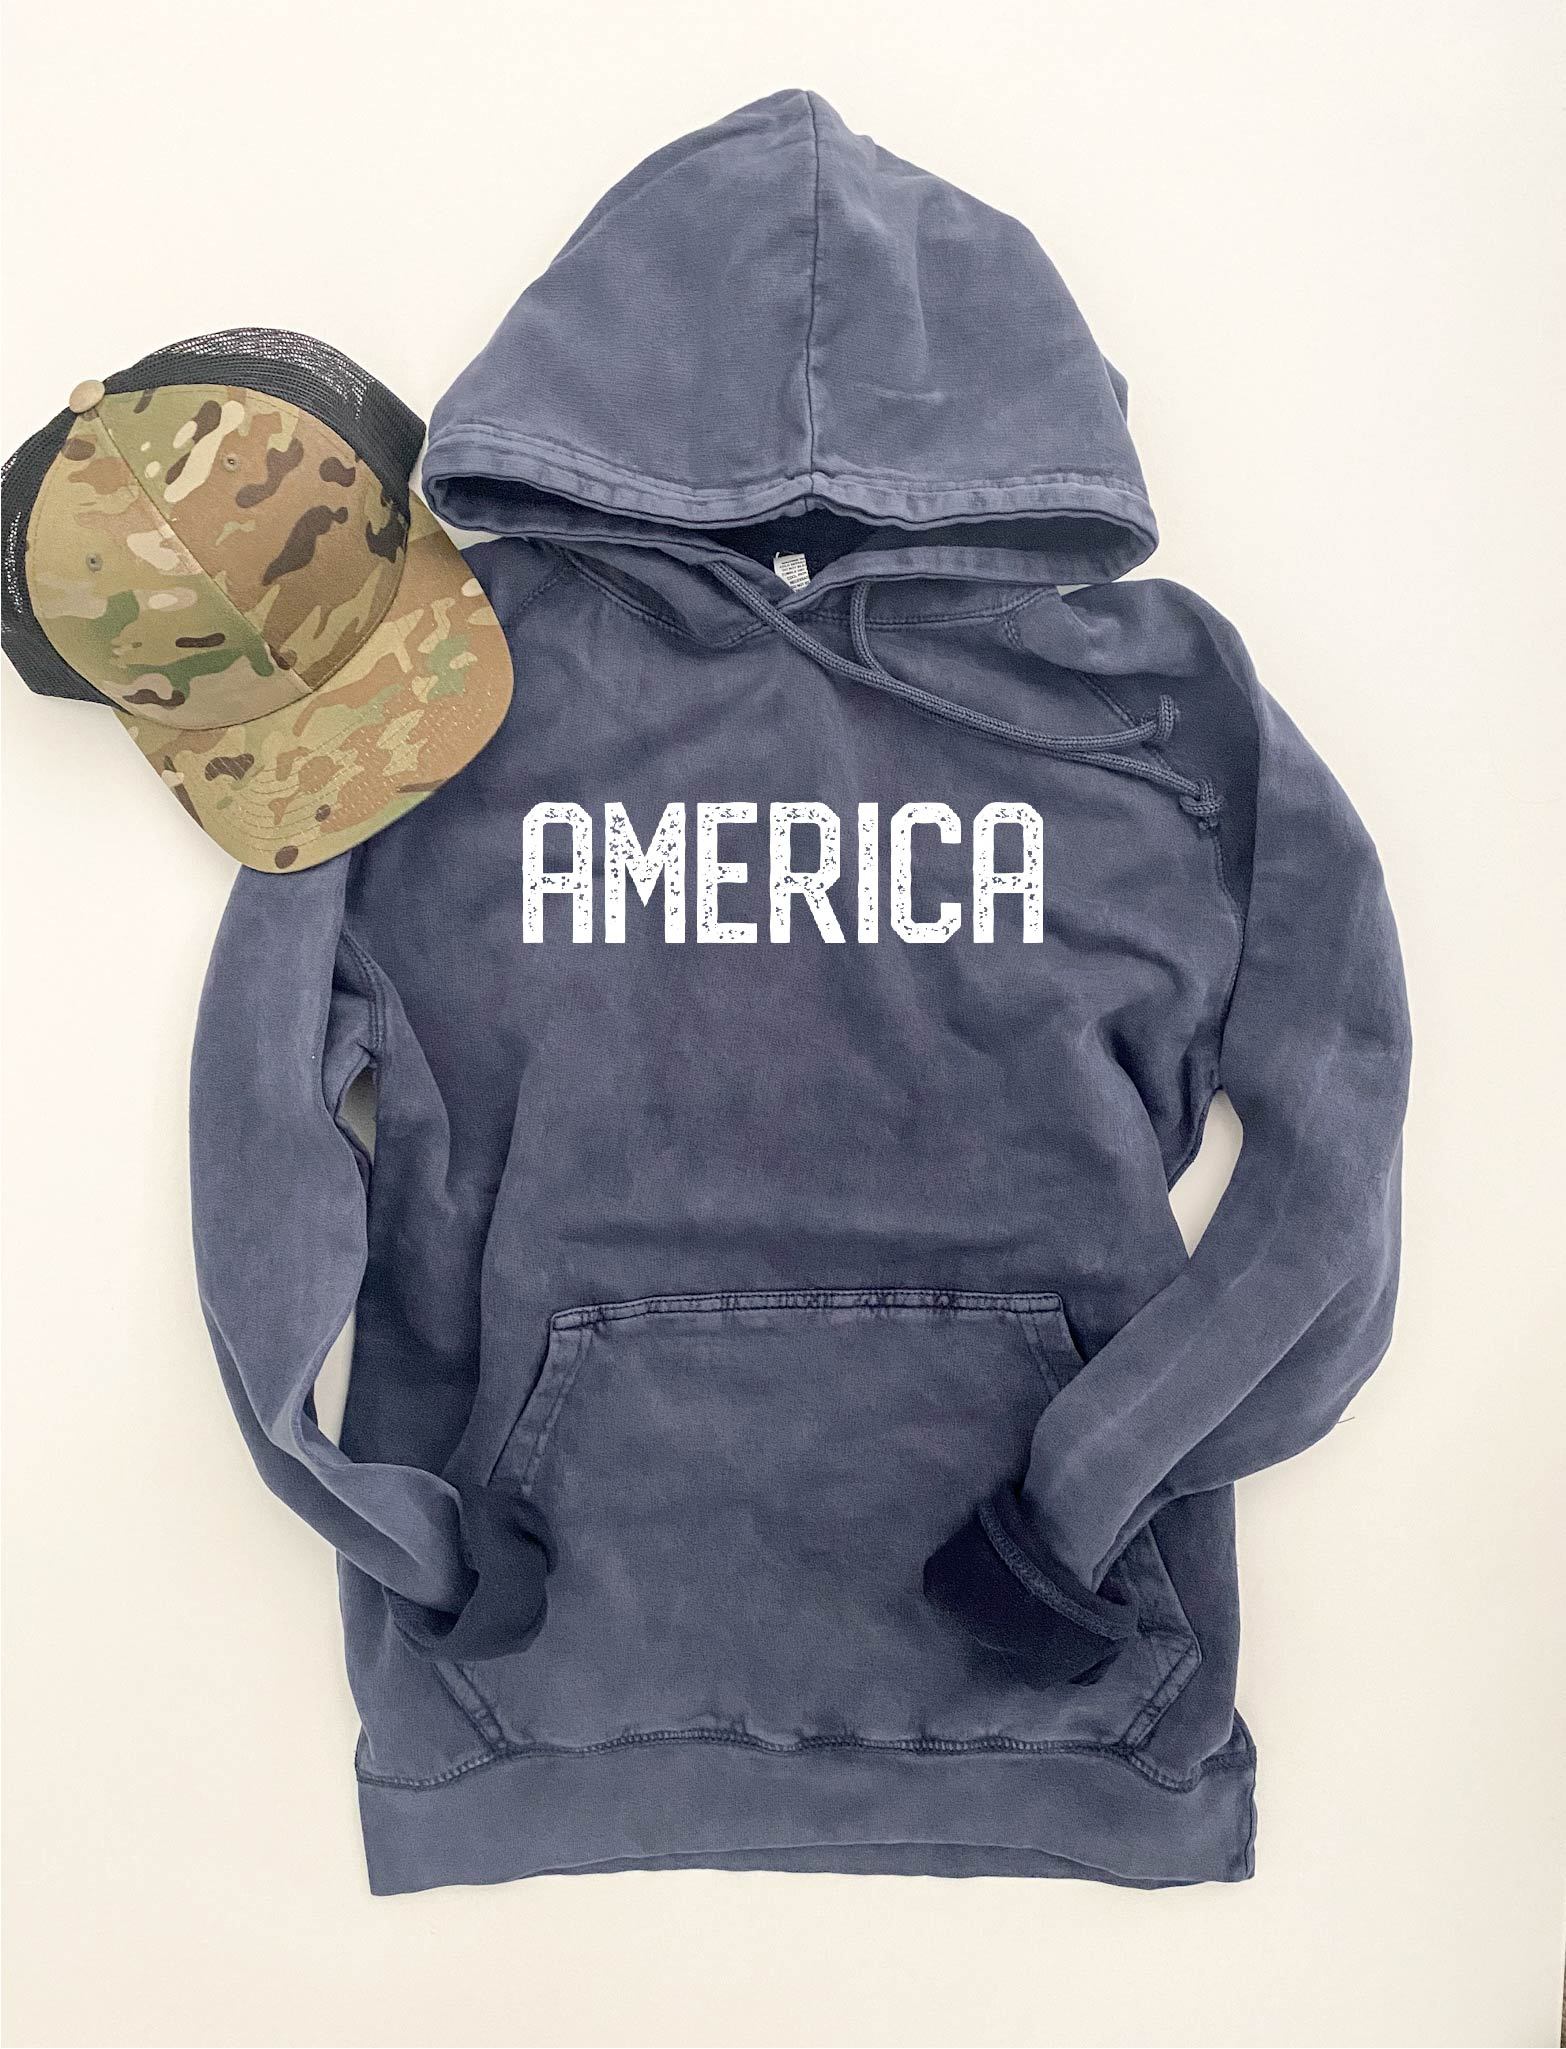 America blockletter vintage wash hoodie Patriotic hoodie Lane Seven vintage hoodie 